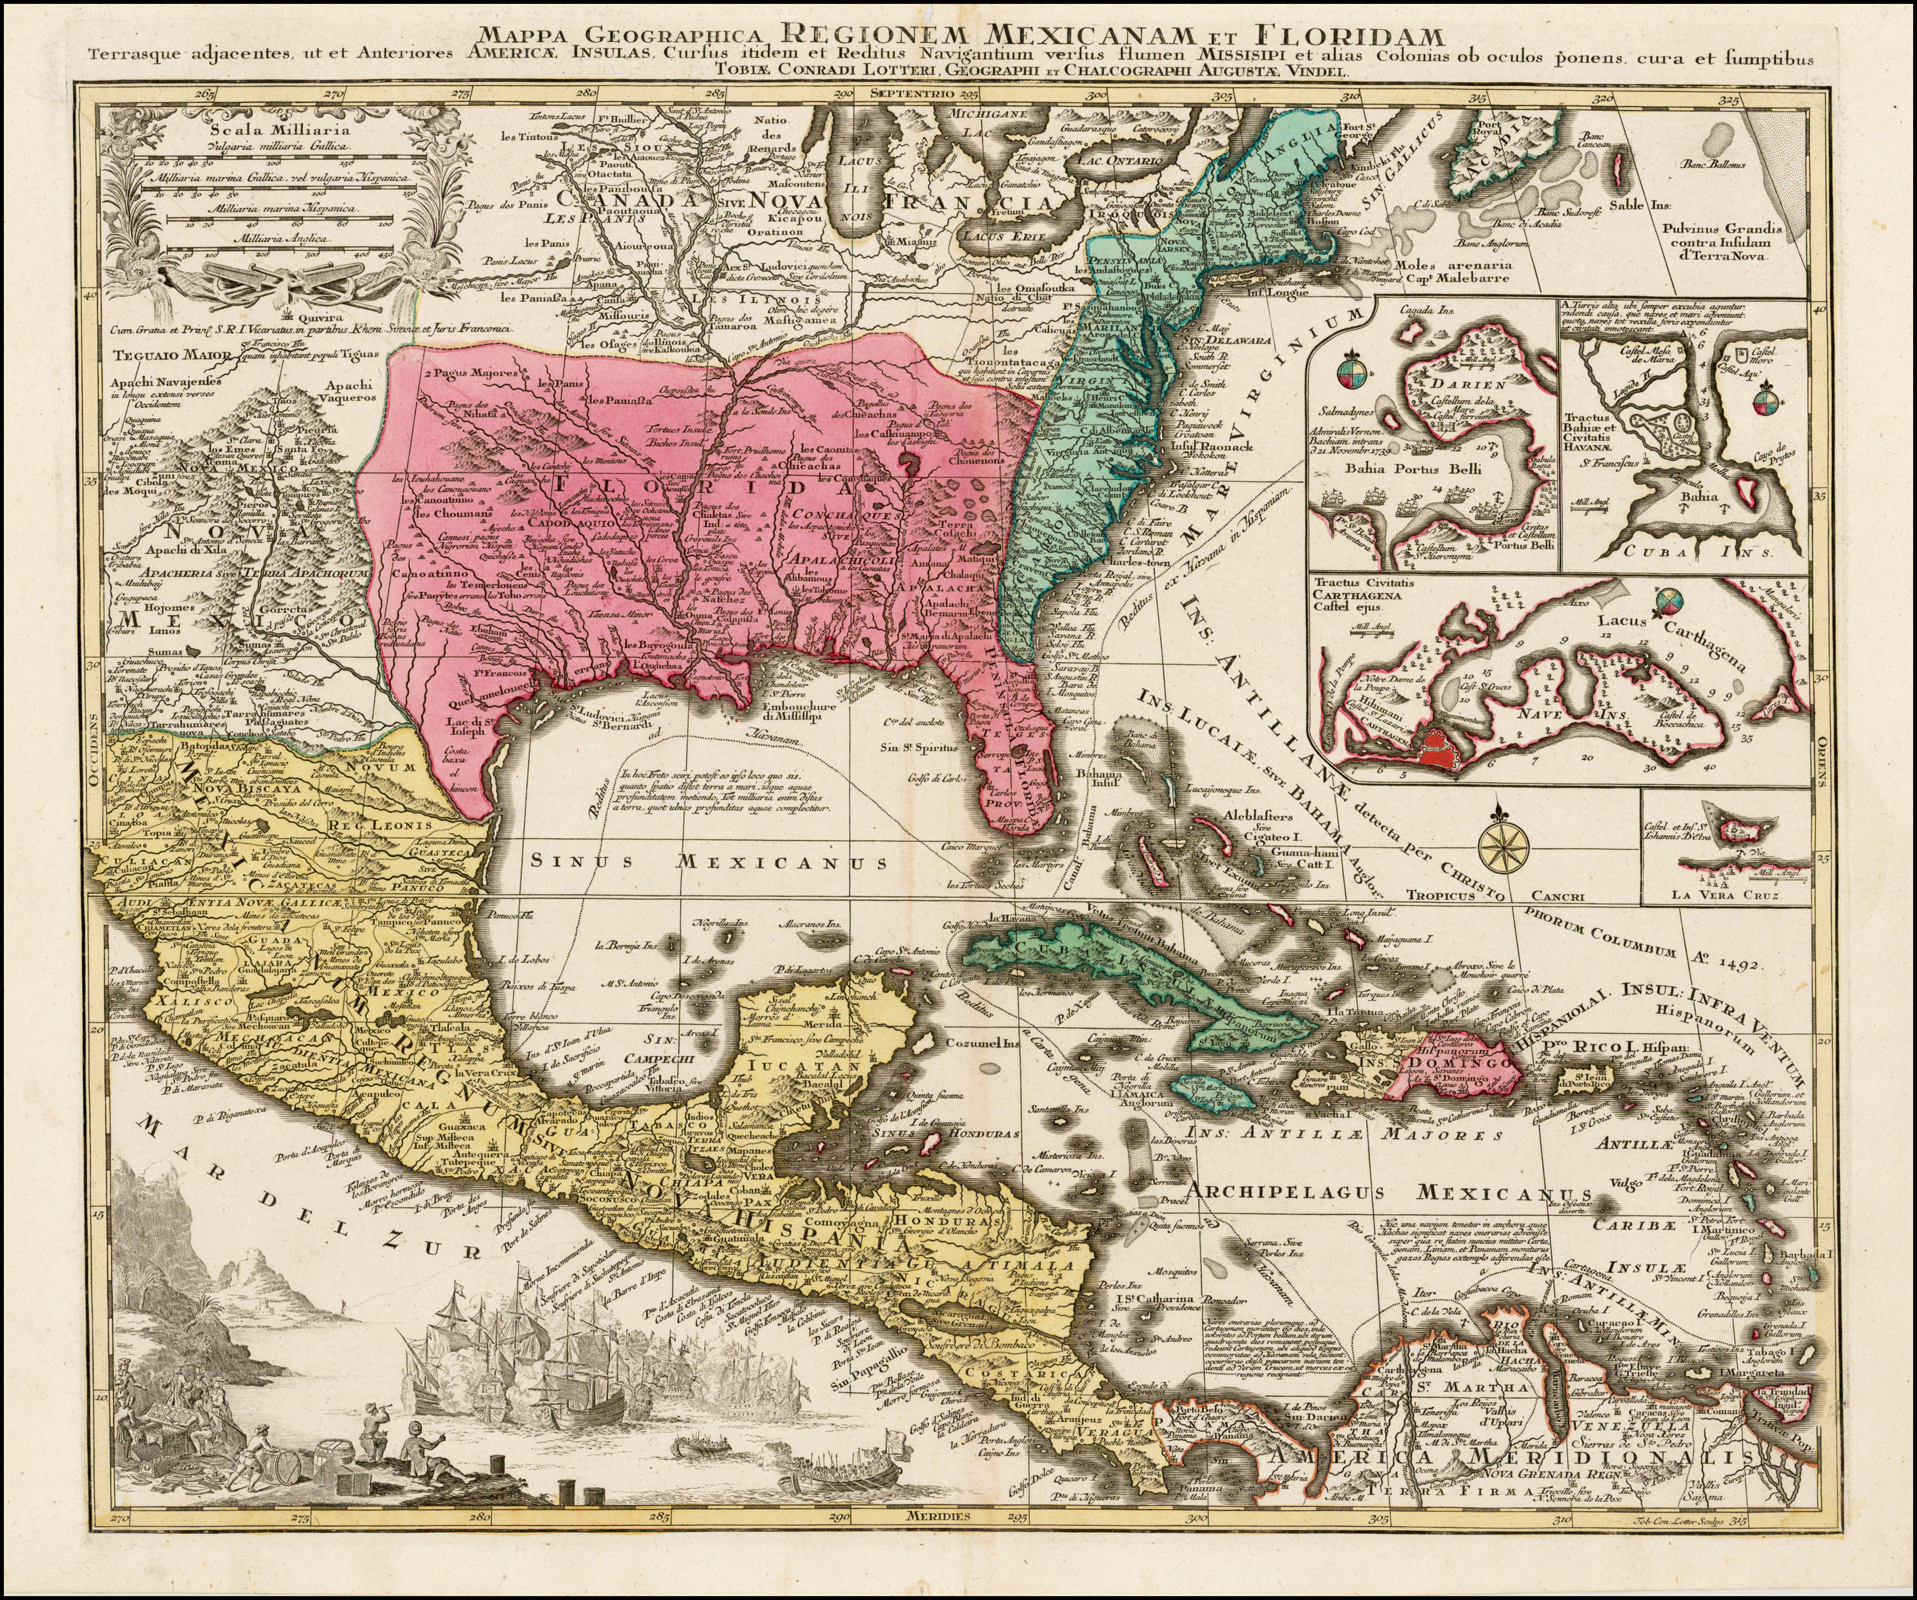 Mappa Geographica, Regionem Mexicanam Et Floridam Terrasque adjacentes ...